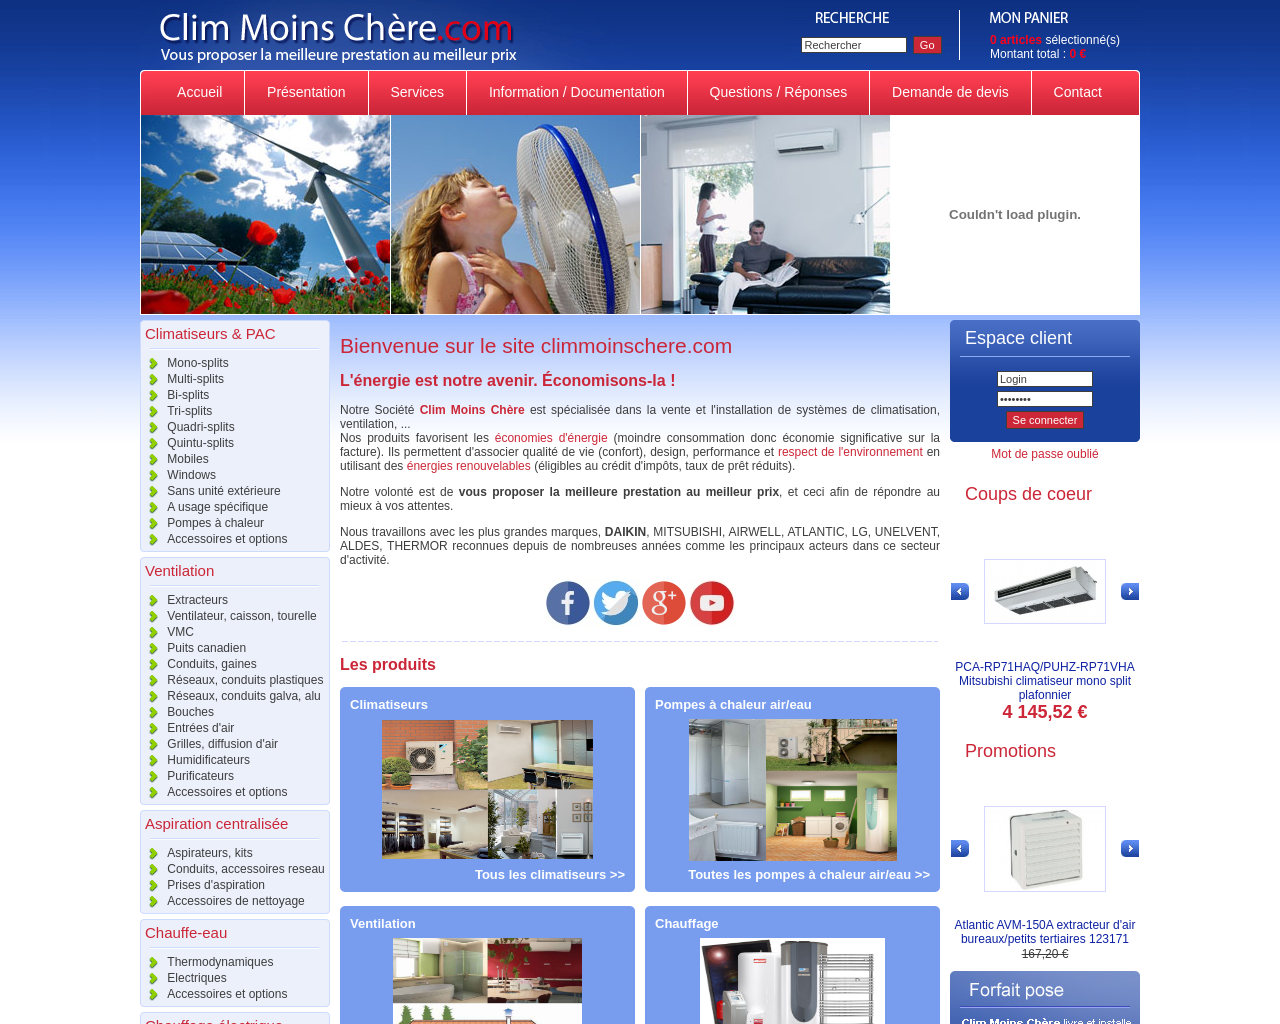 www.climmoinschere.com